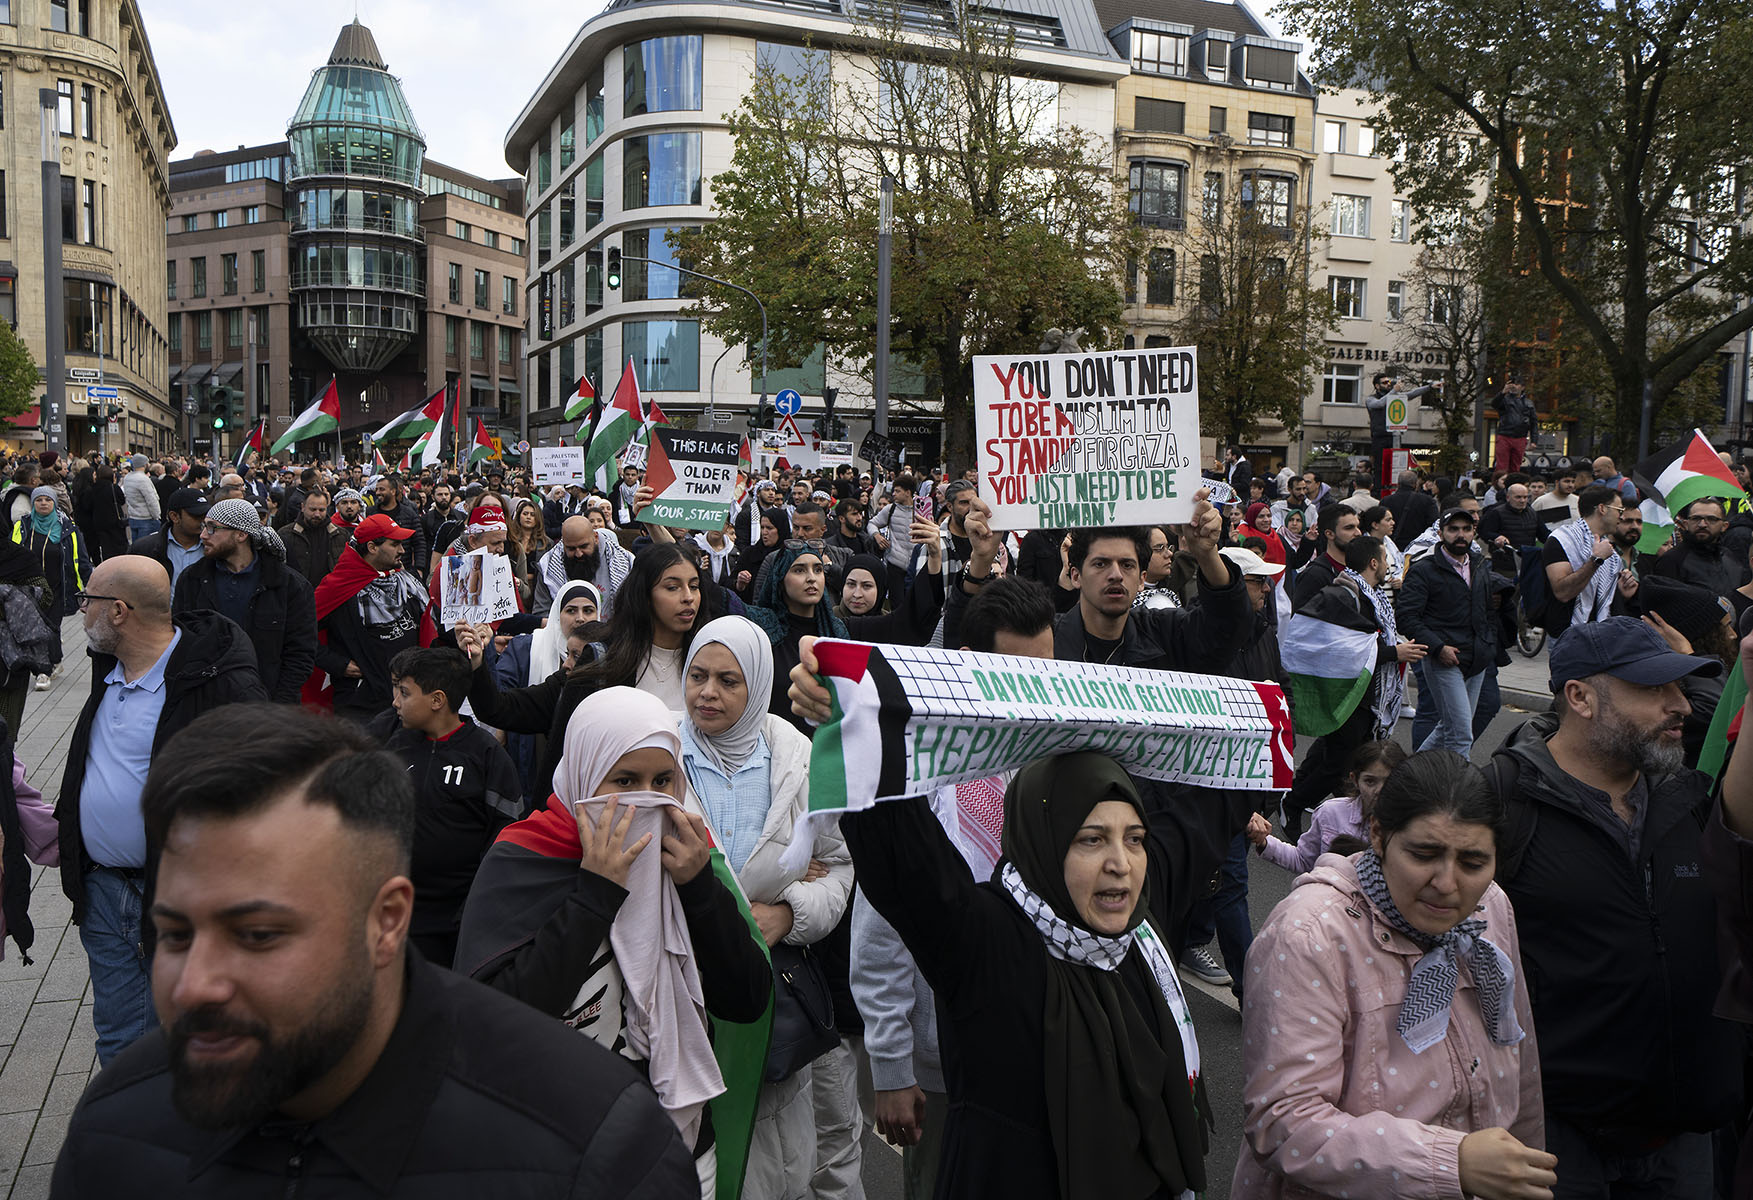 Pro Palästinensische Demonstration in Düsseldorf